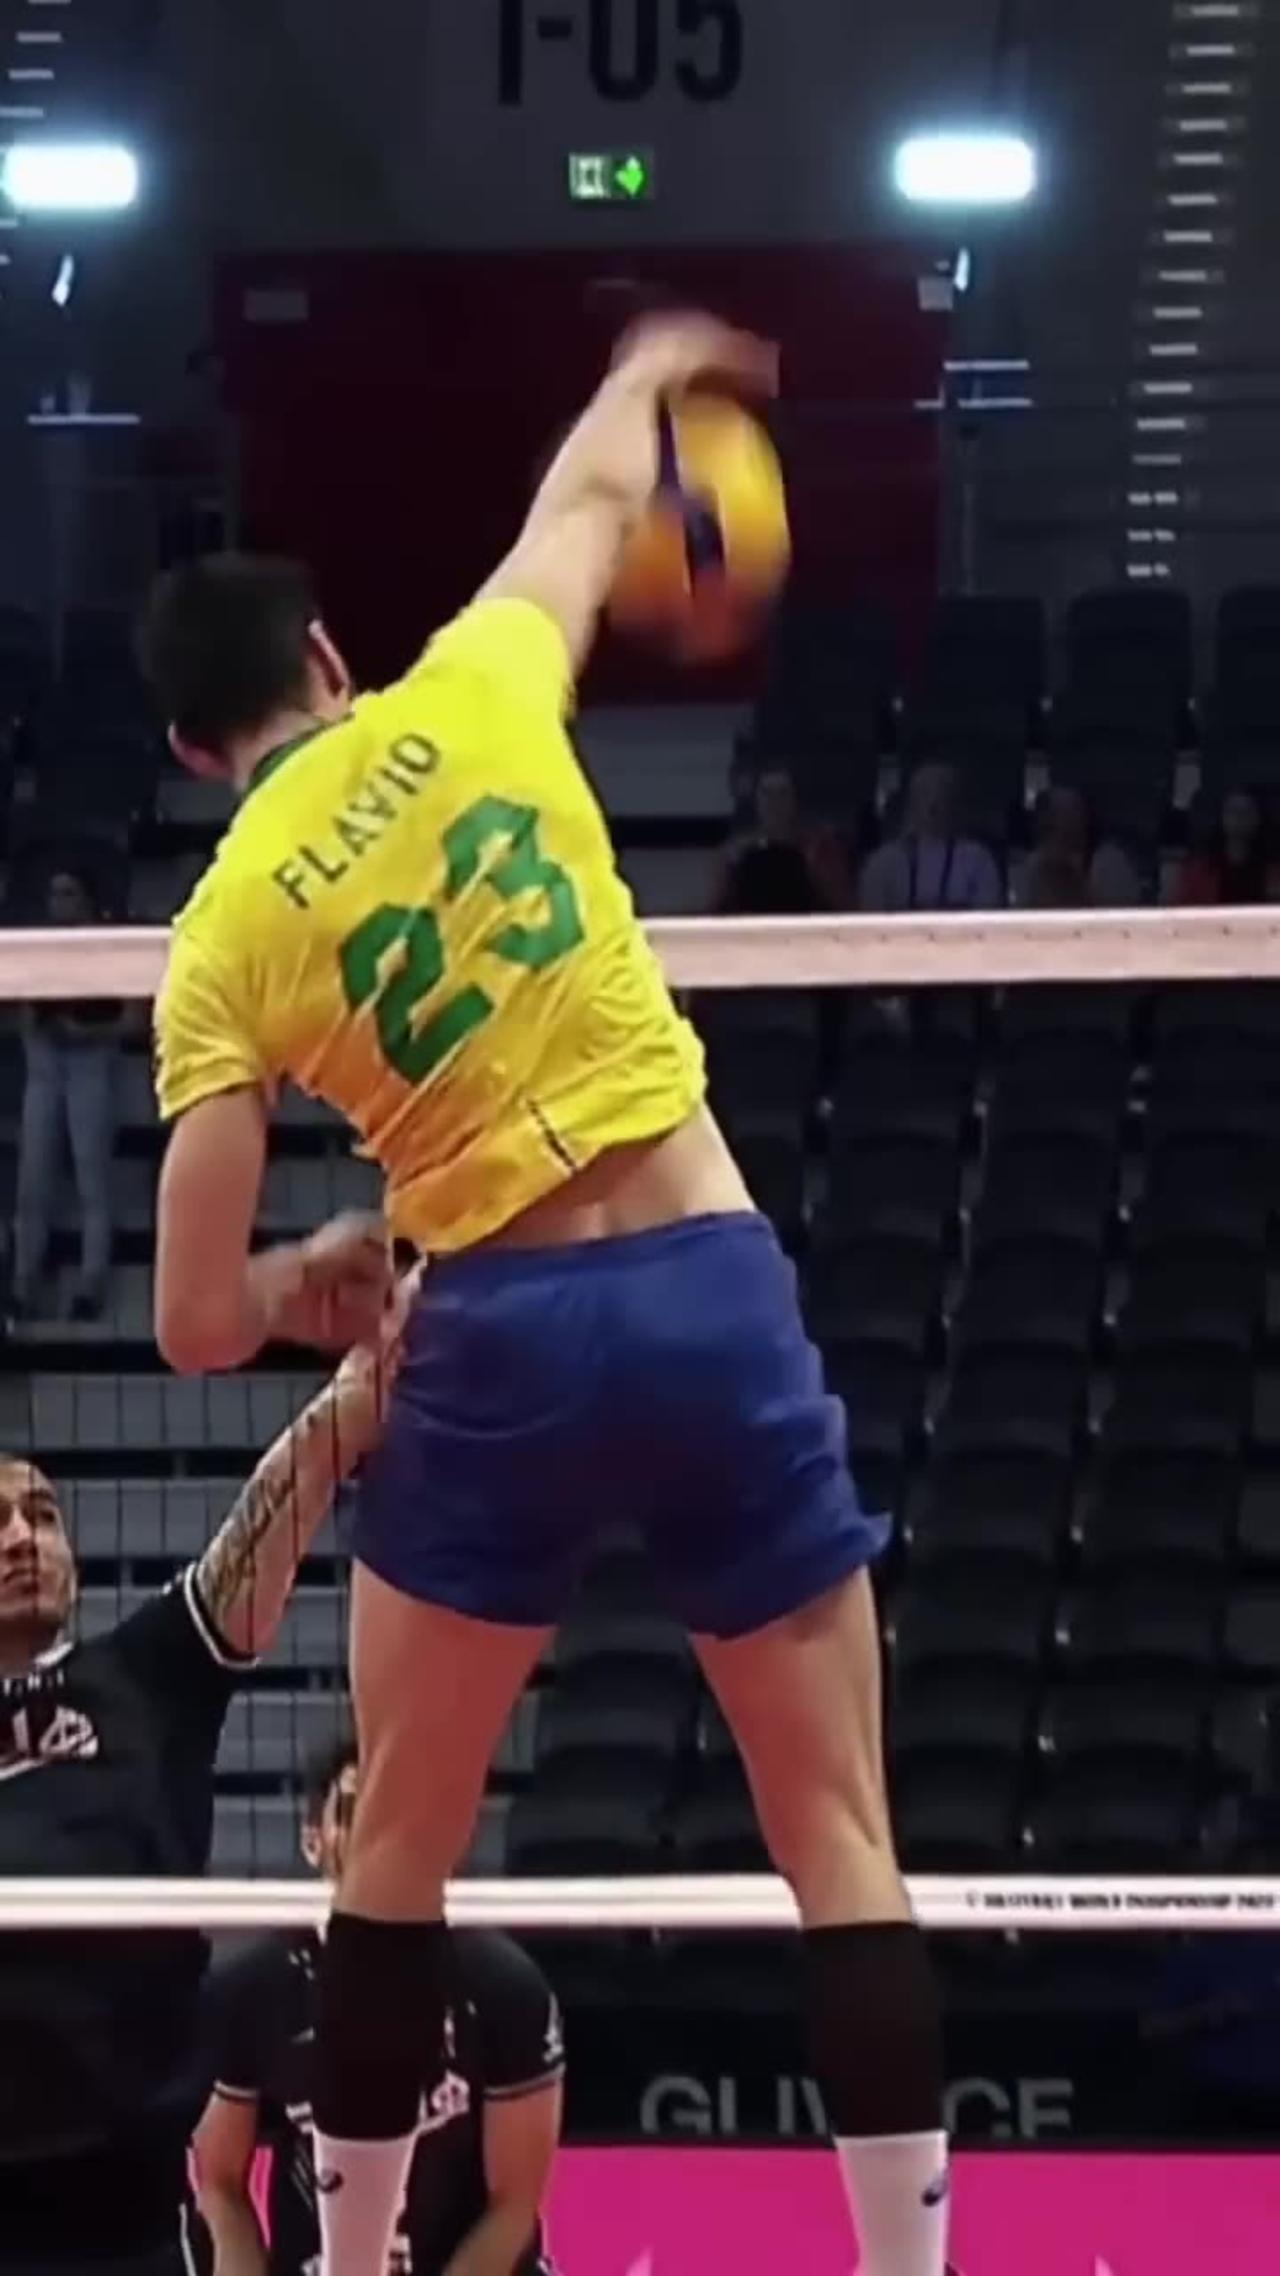 Super spike by Flávio Gualberto 💪 #epicvolleyball #volleyballworld #volleyball